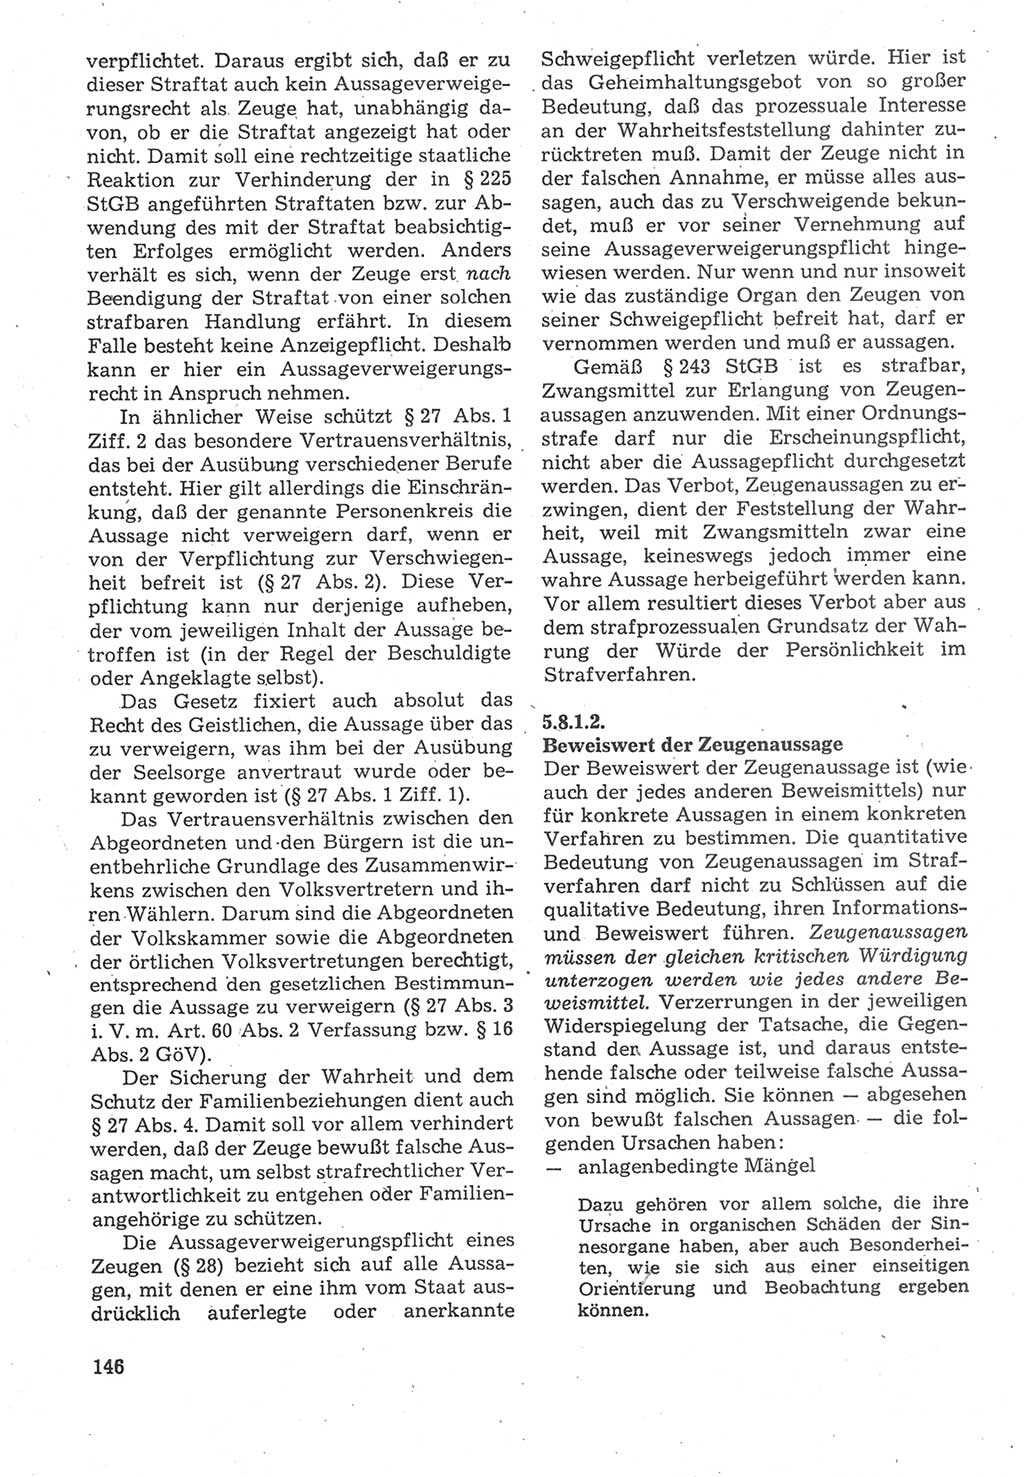 Strafverfahrensrecht [Deutsche Demokratische Republik (DDR)], Lehrbuch 1987, Seite 146 (Strafverf.-R. DDR Lb. 1987, S. 146)